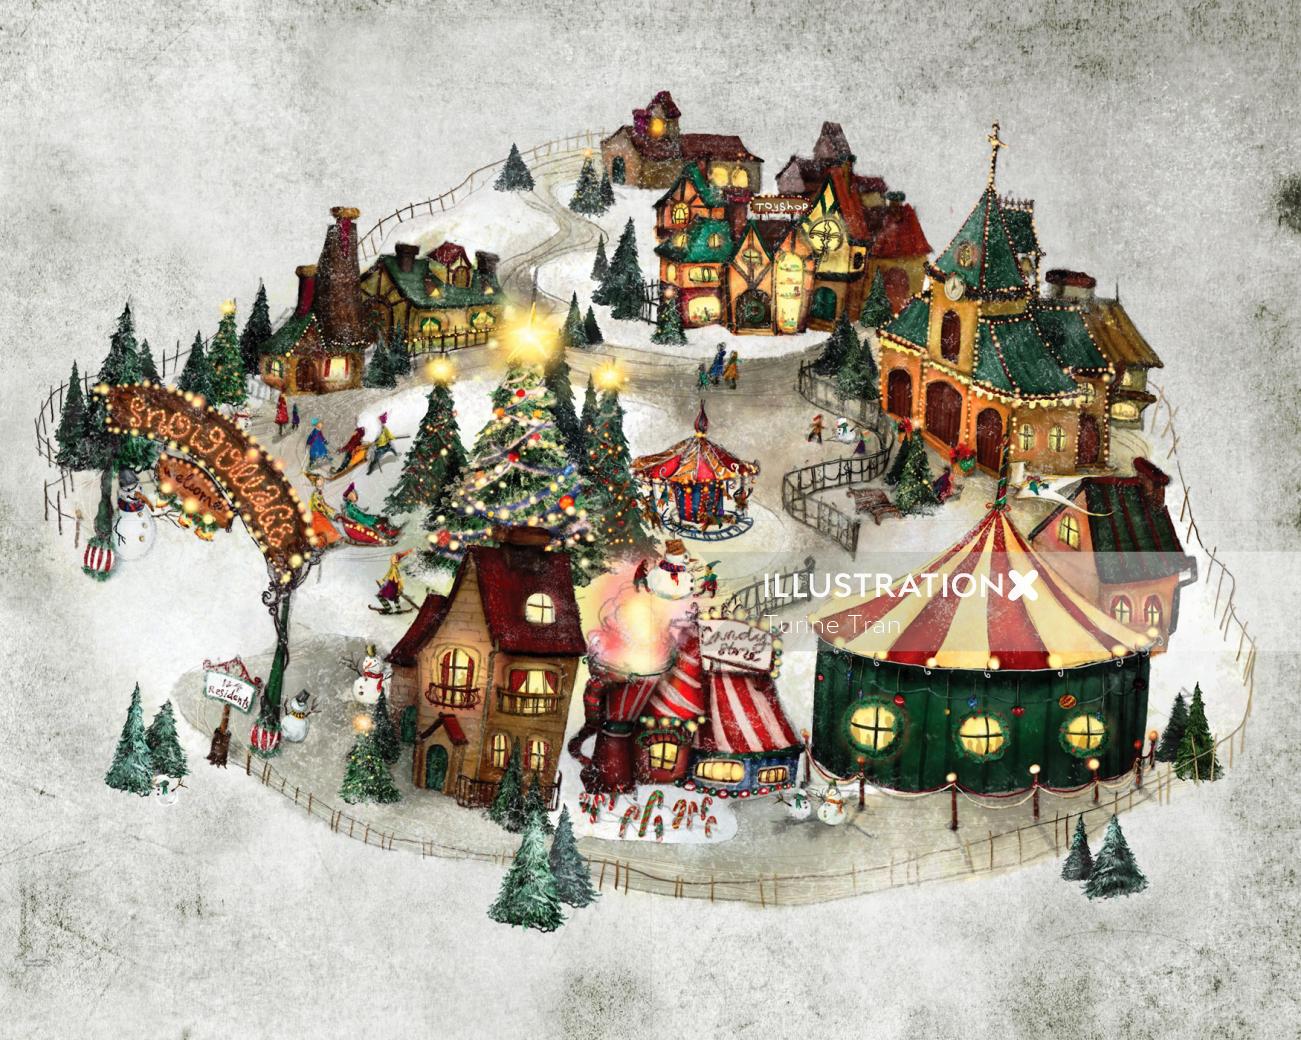 Fantasy Snow Village
